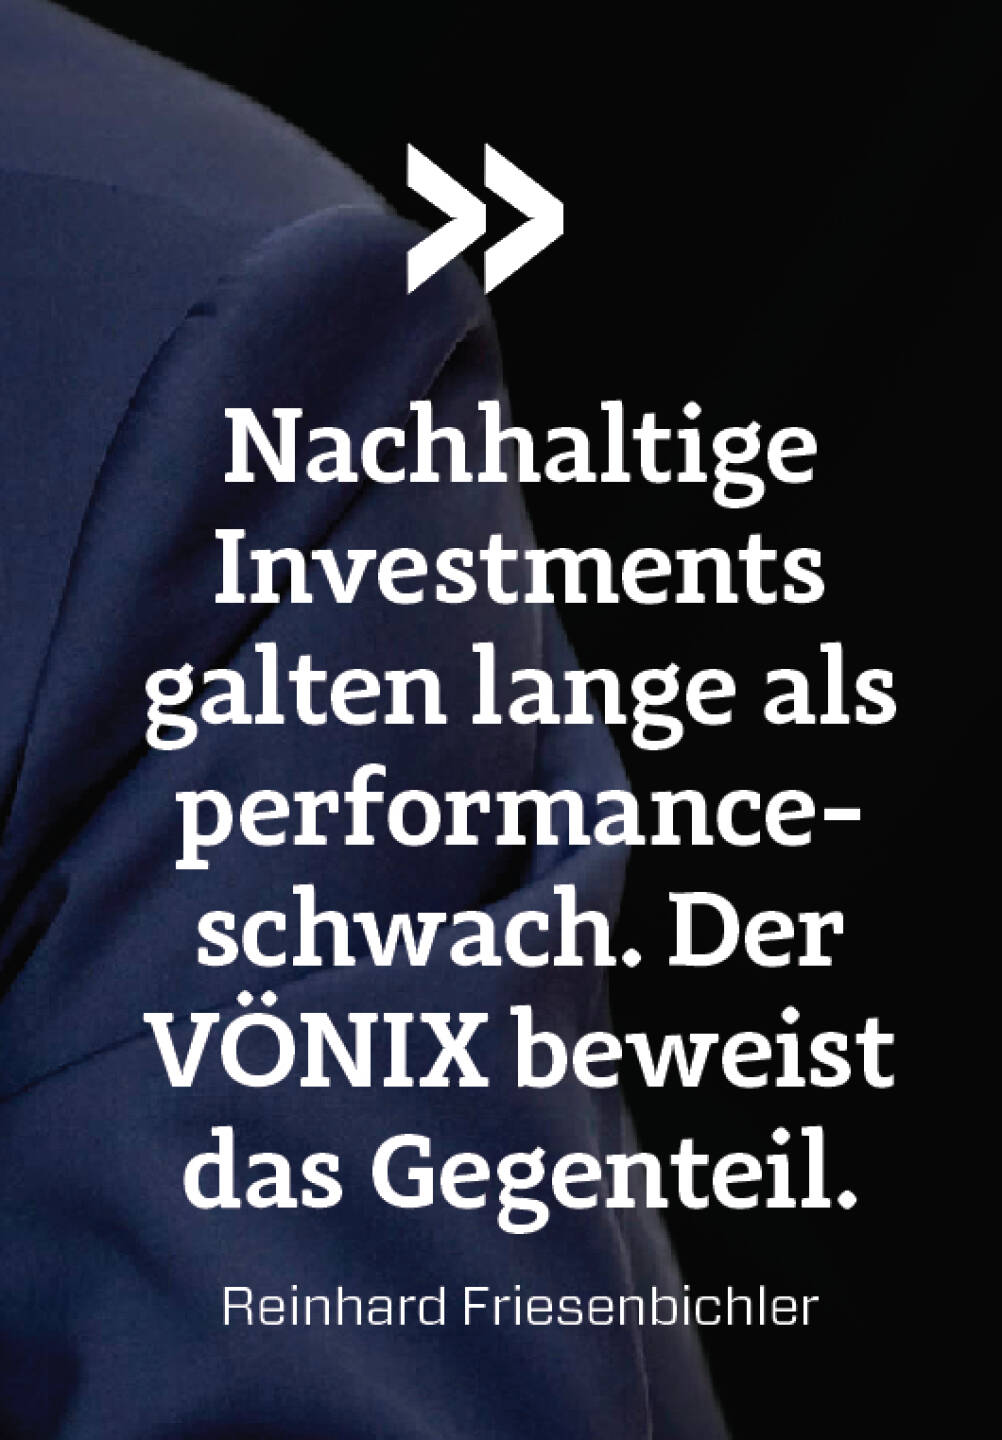 Nachhaltige Investments galten lange als performance- schwach. Der VÖNIX beweist das Gegenteil.
Reinhard Friesenbichler